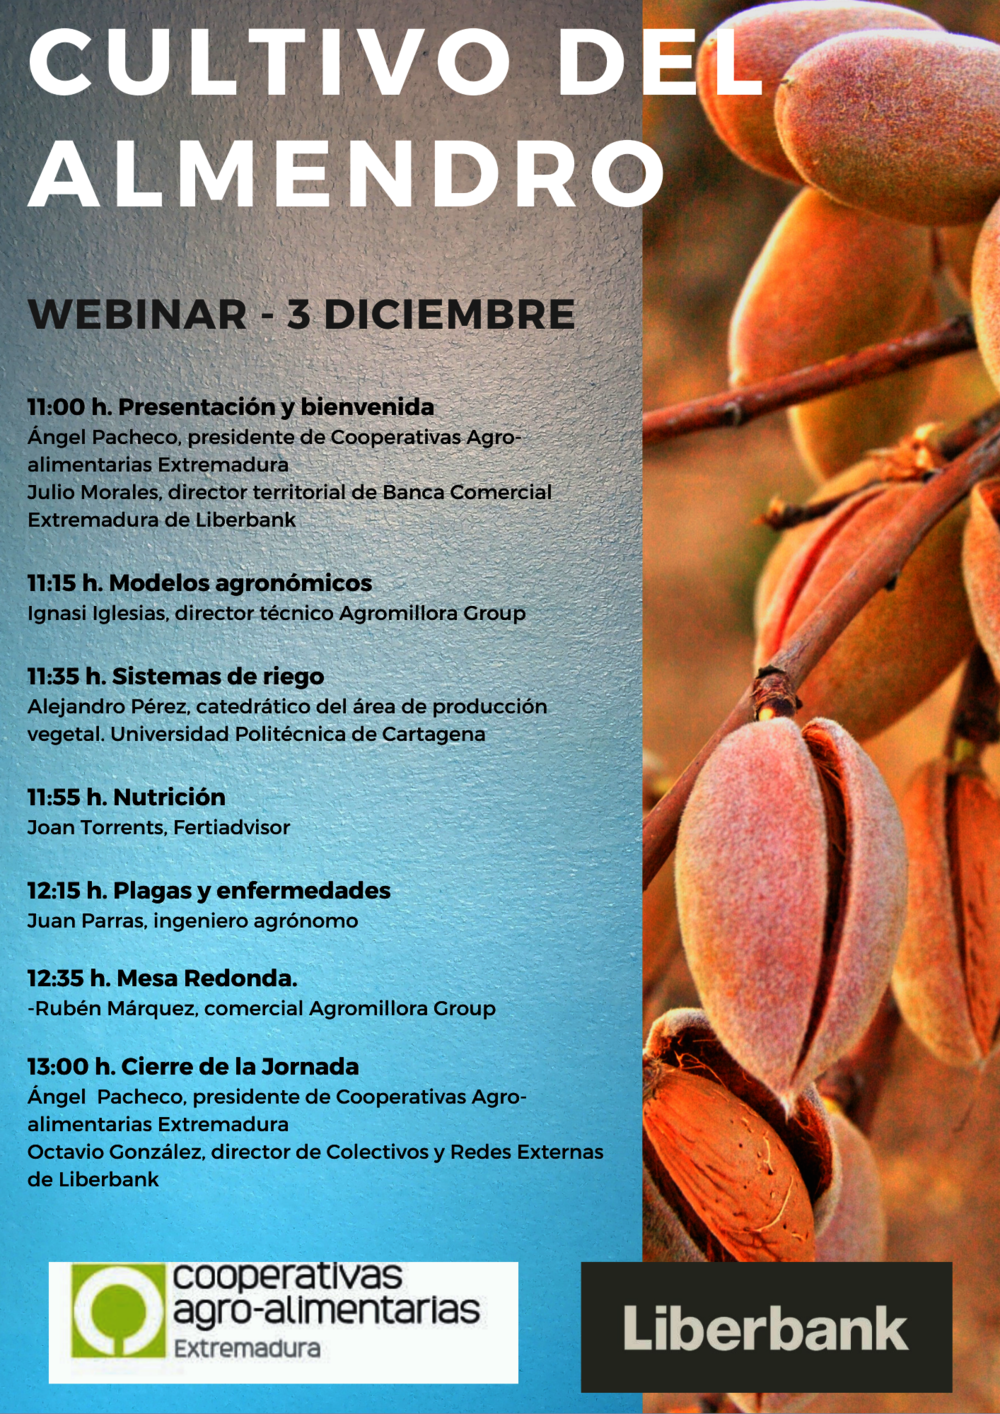 El cultivo del almendro centra un seminario online de Cooperativas Extremadura